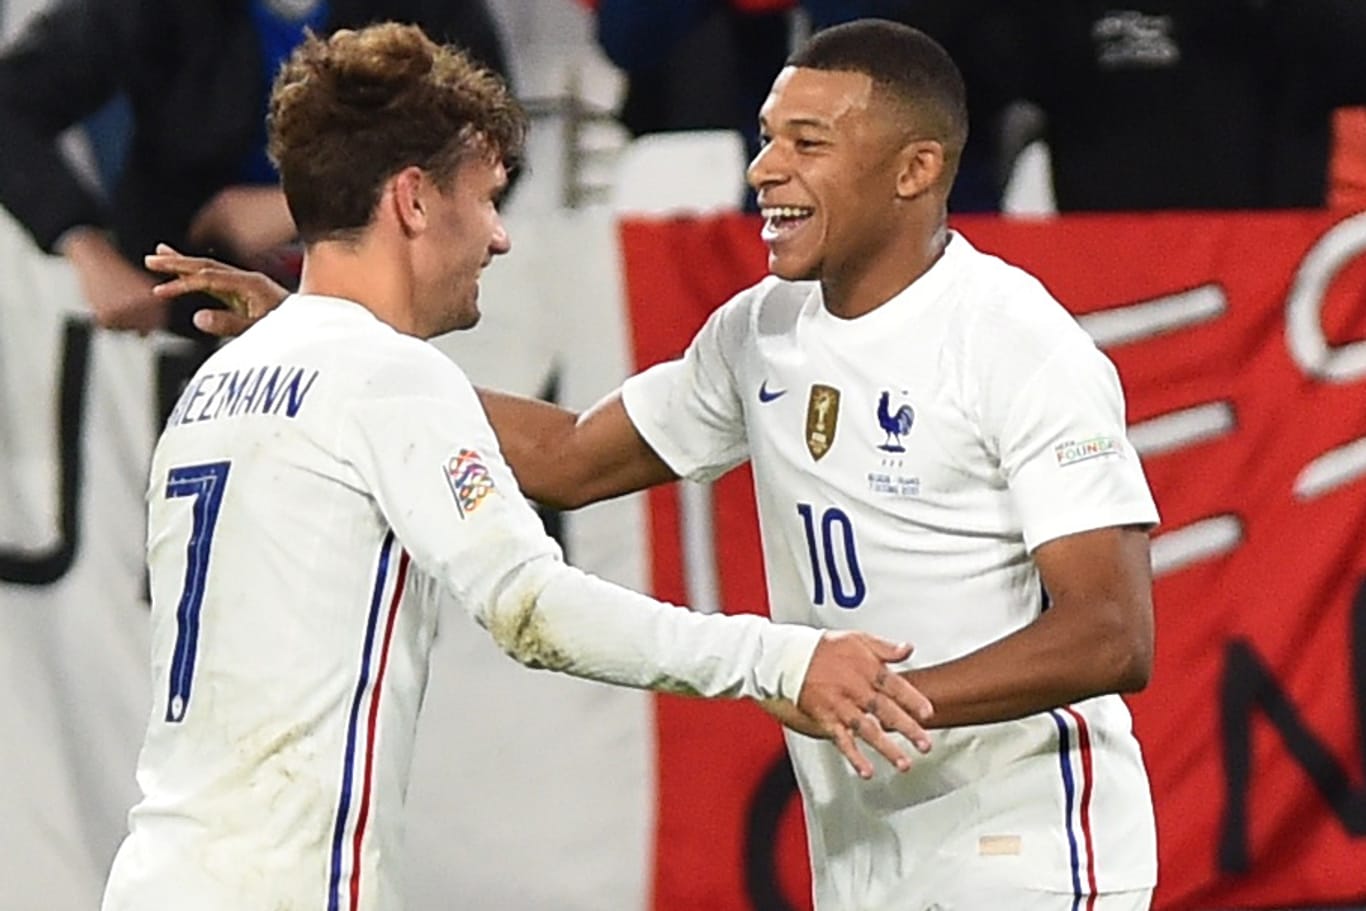 Antoine Griezmann und Kylian Mbappé (v.l.) bejubeln den Last-Minute-Erfolg Frankreichs.